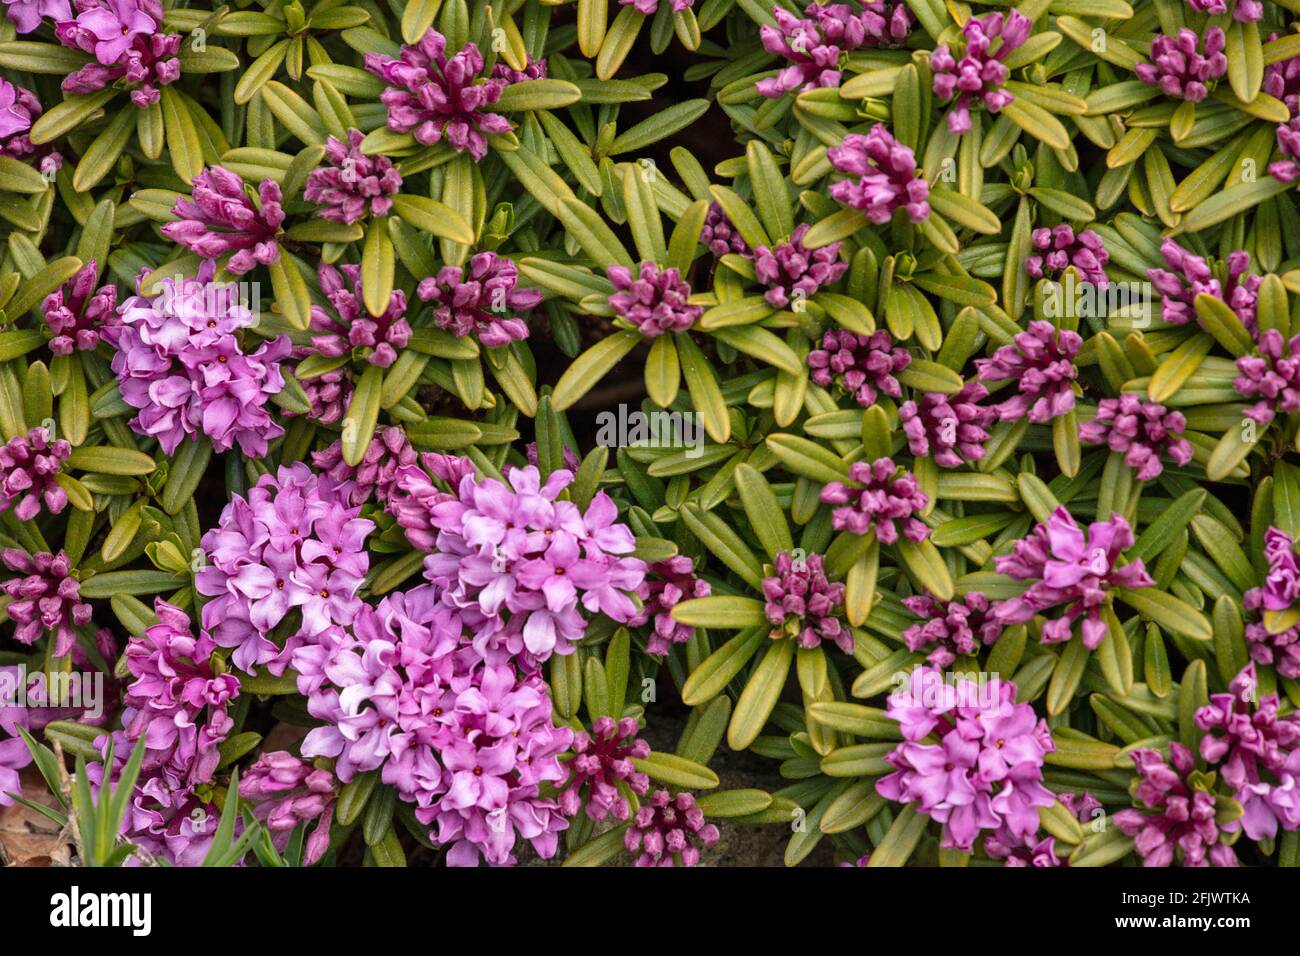 Daphne × susannae 'Tichborne', daphne 'Tichborne',  close-up natural plant portrait Stock Photo